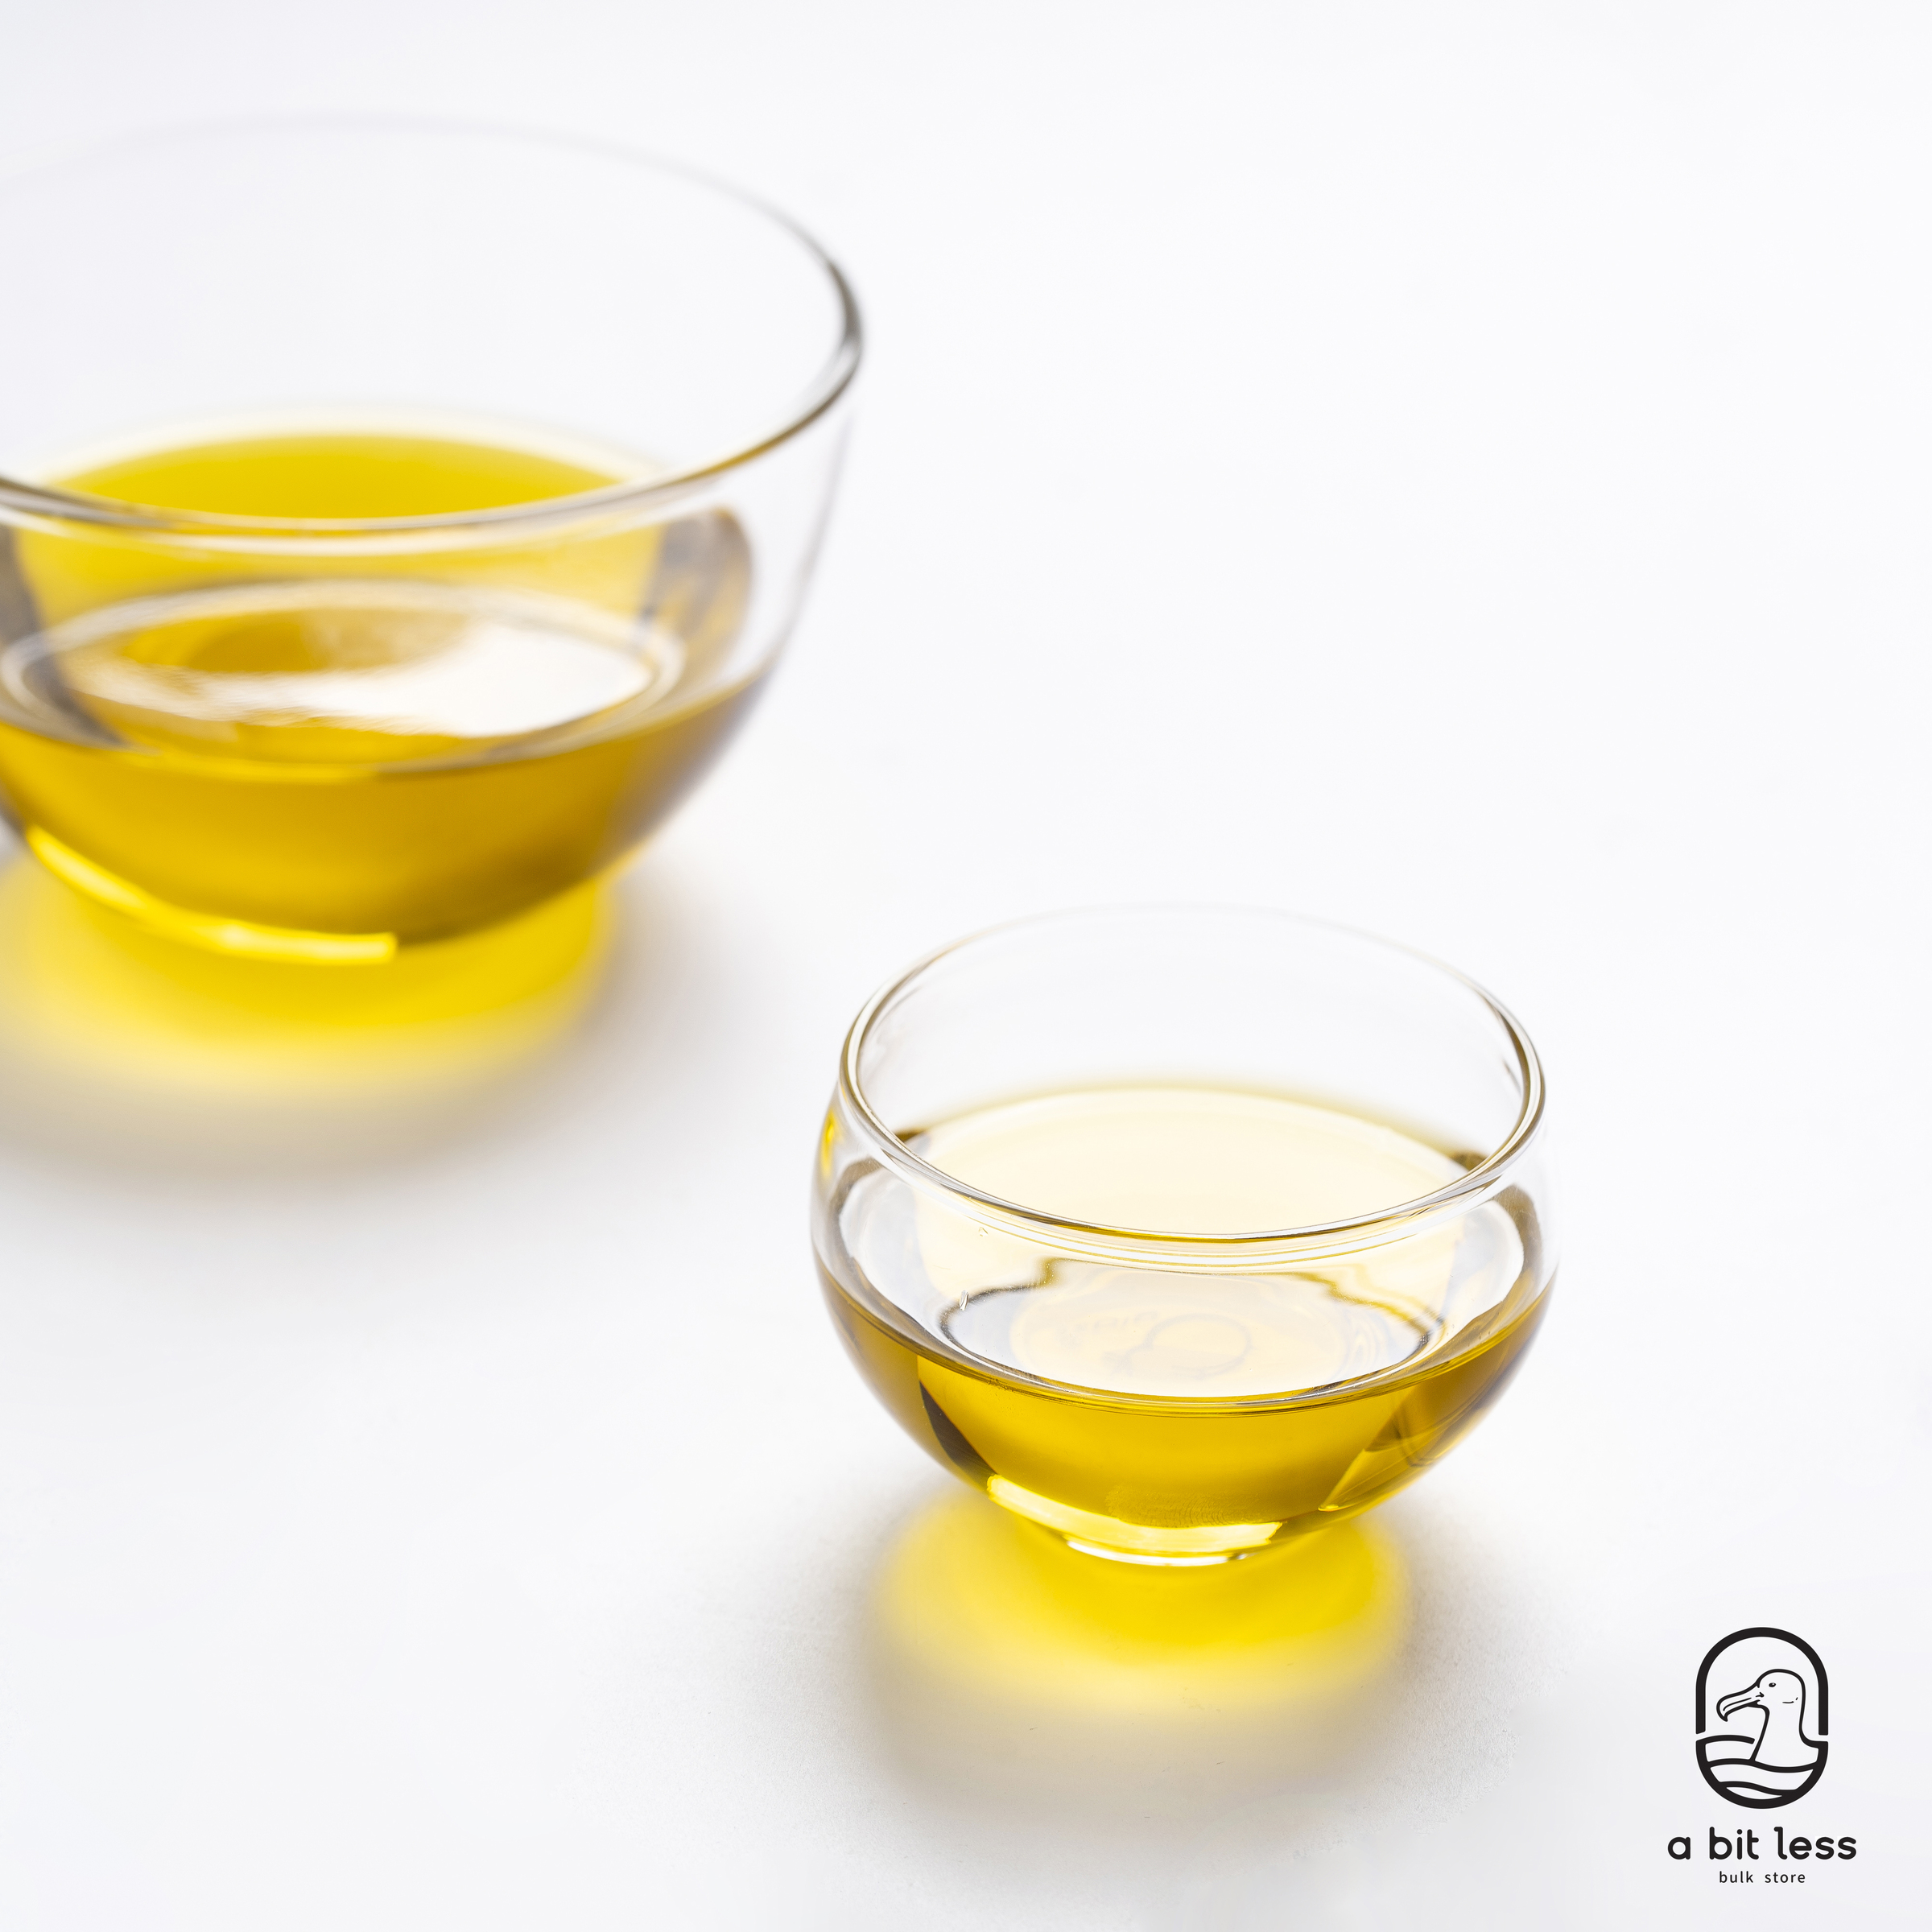 AbitLESS-50-Extra Virgin Olive Oil.jpg